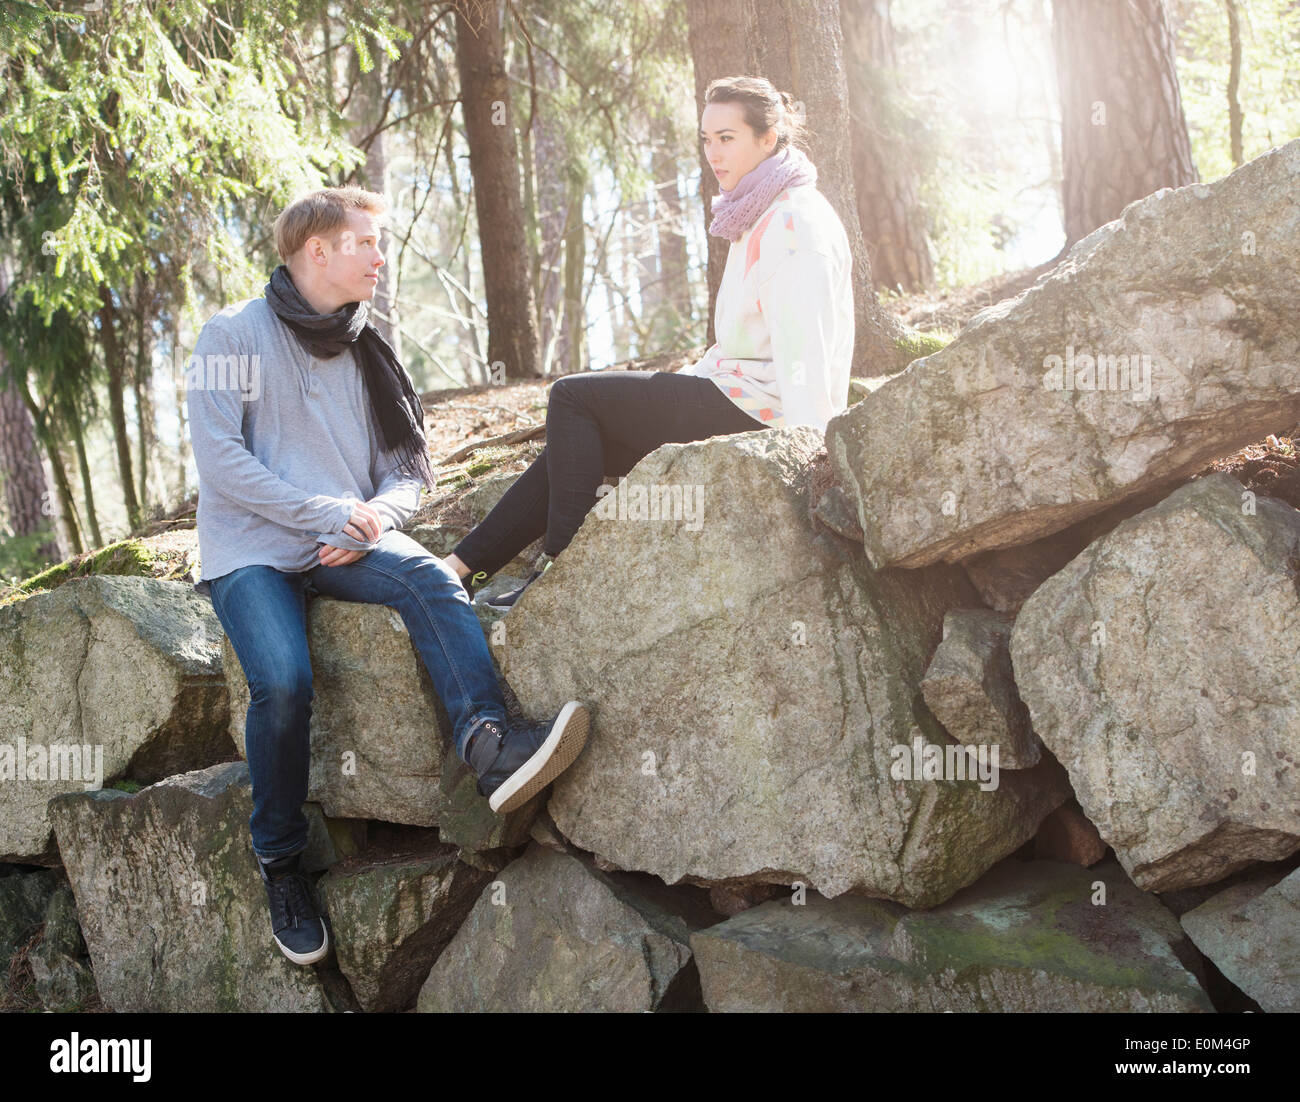 Junges Paar in der Natur auf den großen Felsen in Wäldern während einer Wanderung ausruhen. Stockfoto